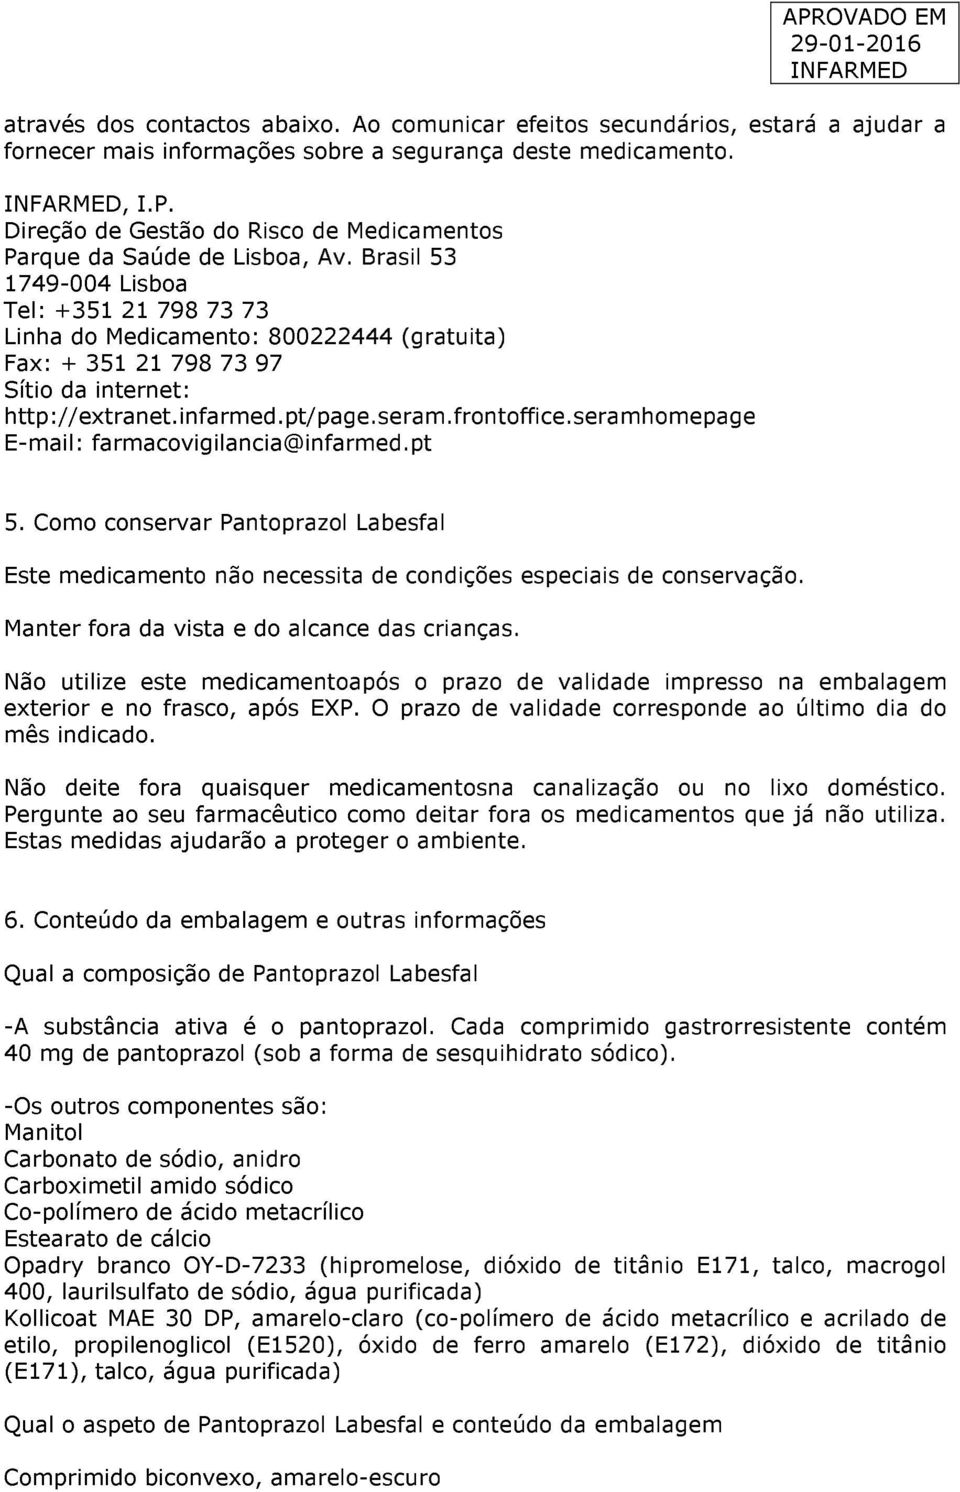 Brasil 53 1749-004 Lisboa Tel: +351 21 798 73 73 Linha do Medicamento: 800222444 (gratuita) Fax: + 351 21 798 73 97 Sítio da internet: http://extranet.infarmed.pt/page.seram.frontoffice.